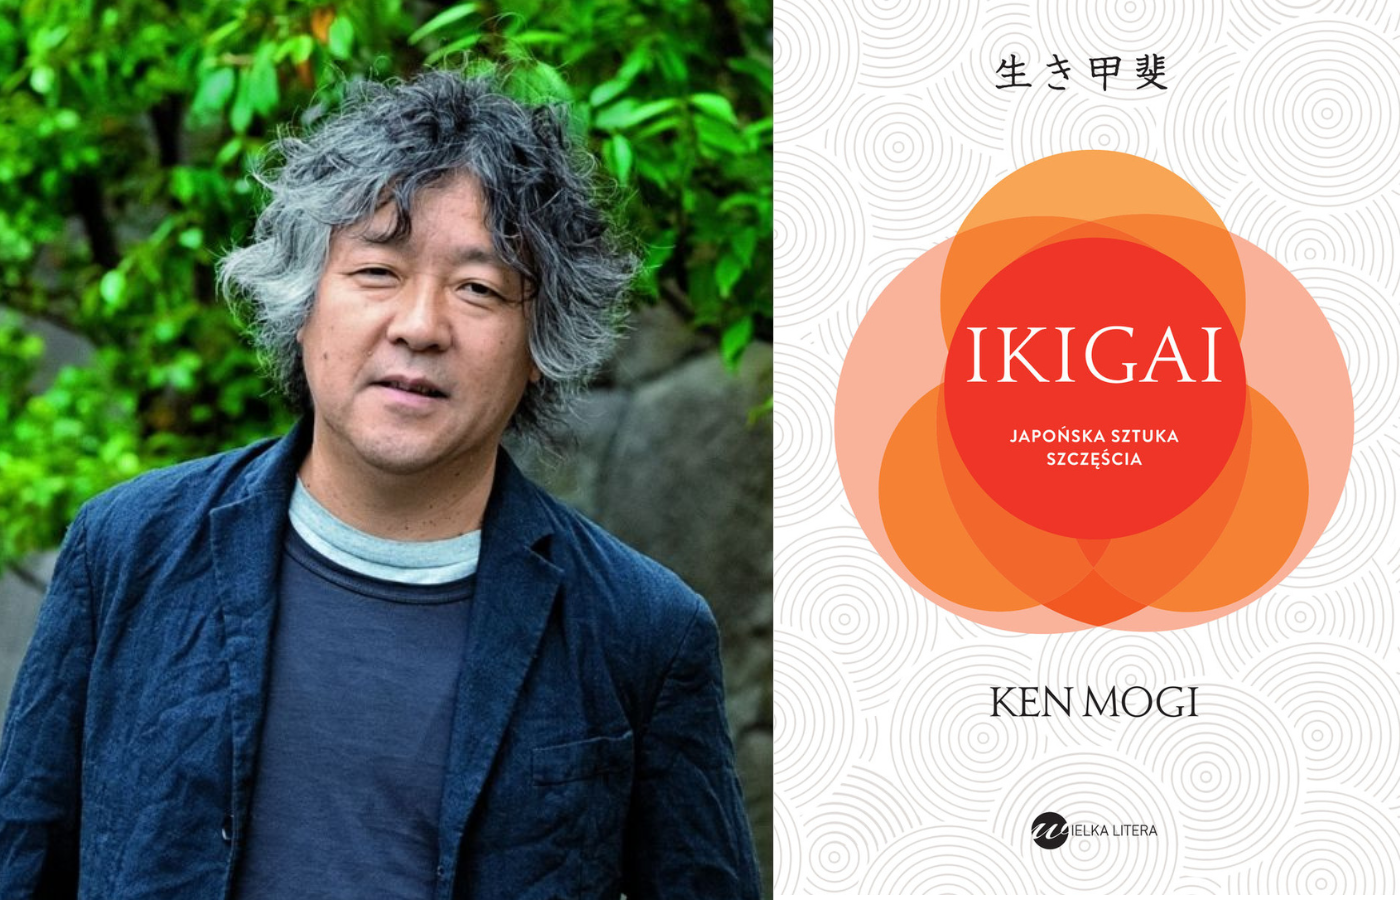 Ken Mogi odsłania w książce o Ikigai sekrety japońskiej sztuki szczęście. (Fot. materiały prasowe)